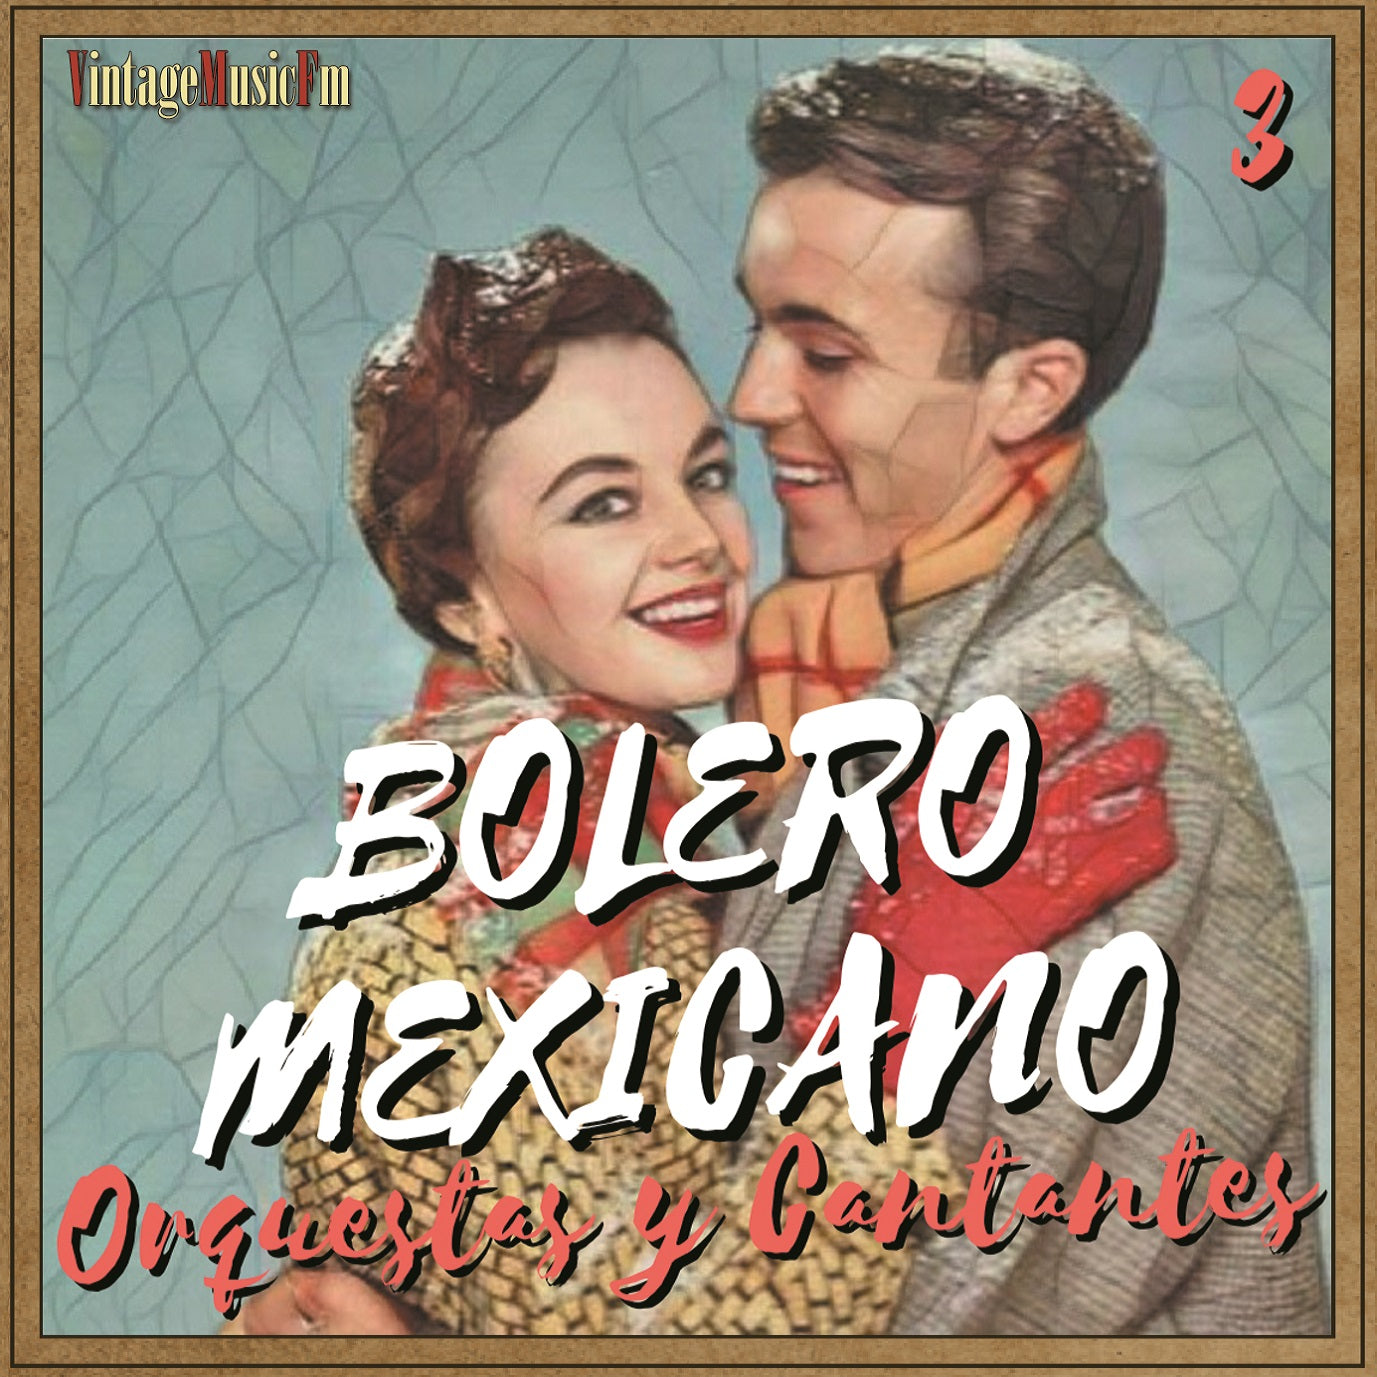 Bolero Mexicano - Cantantes y Orquestas 3 (Colección Boleros)